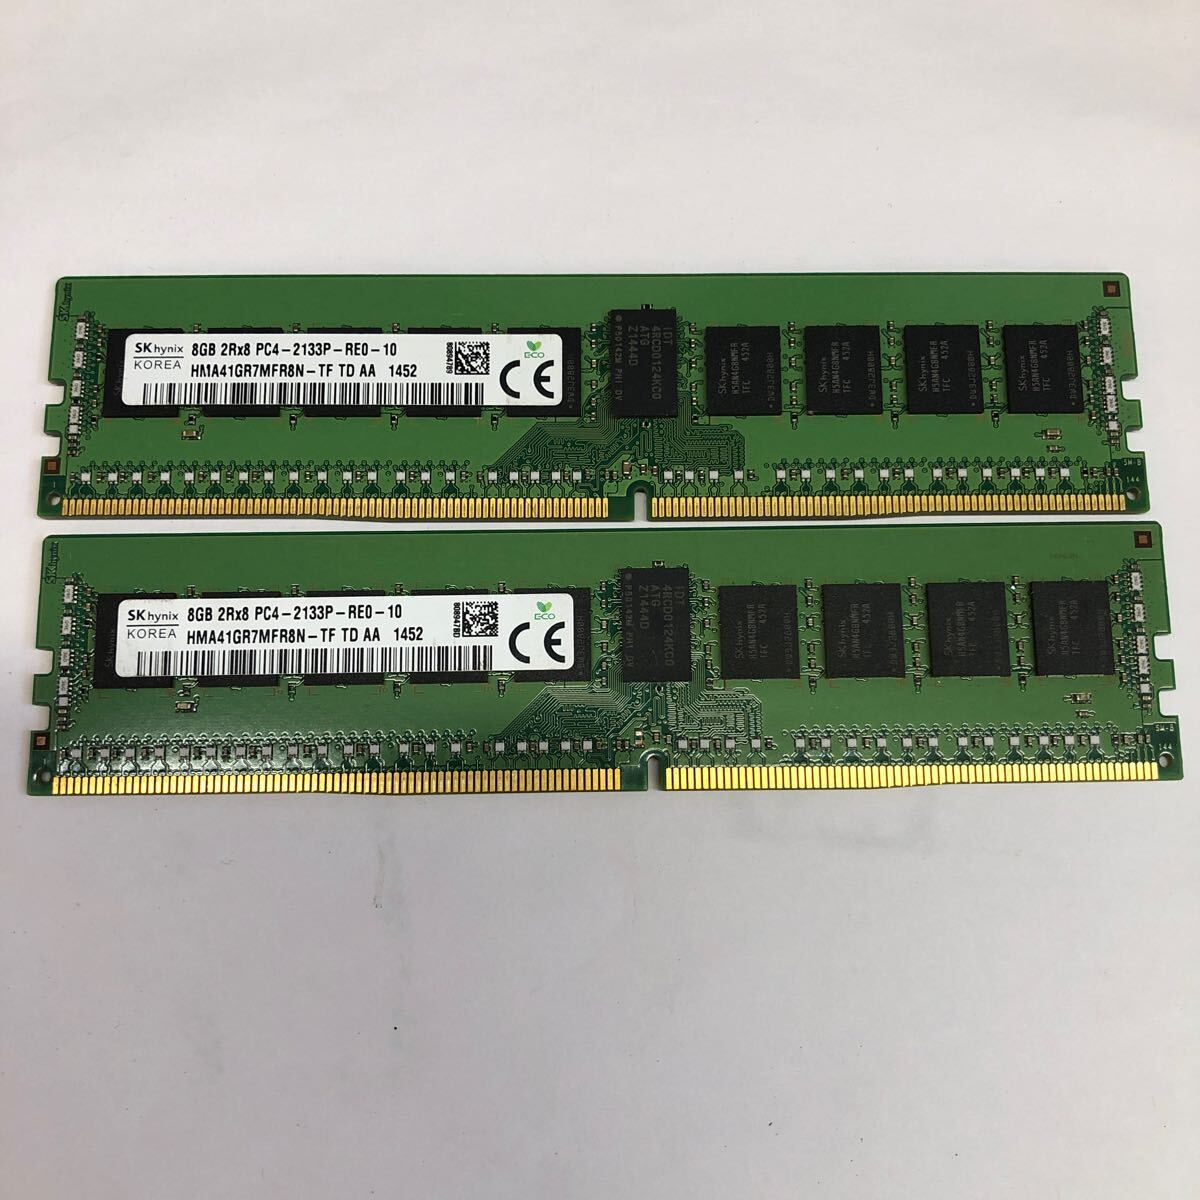 中古 SKhynix 8GB 2Rx8 PC4-2133P-REO-10 HMA41GR7FR8N-TF 2枚セット 計16GB_画像1